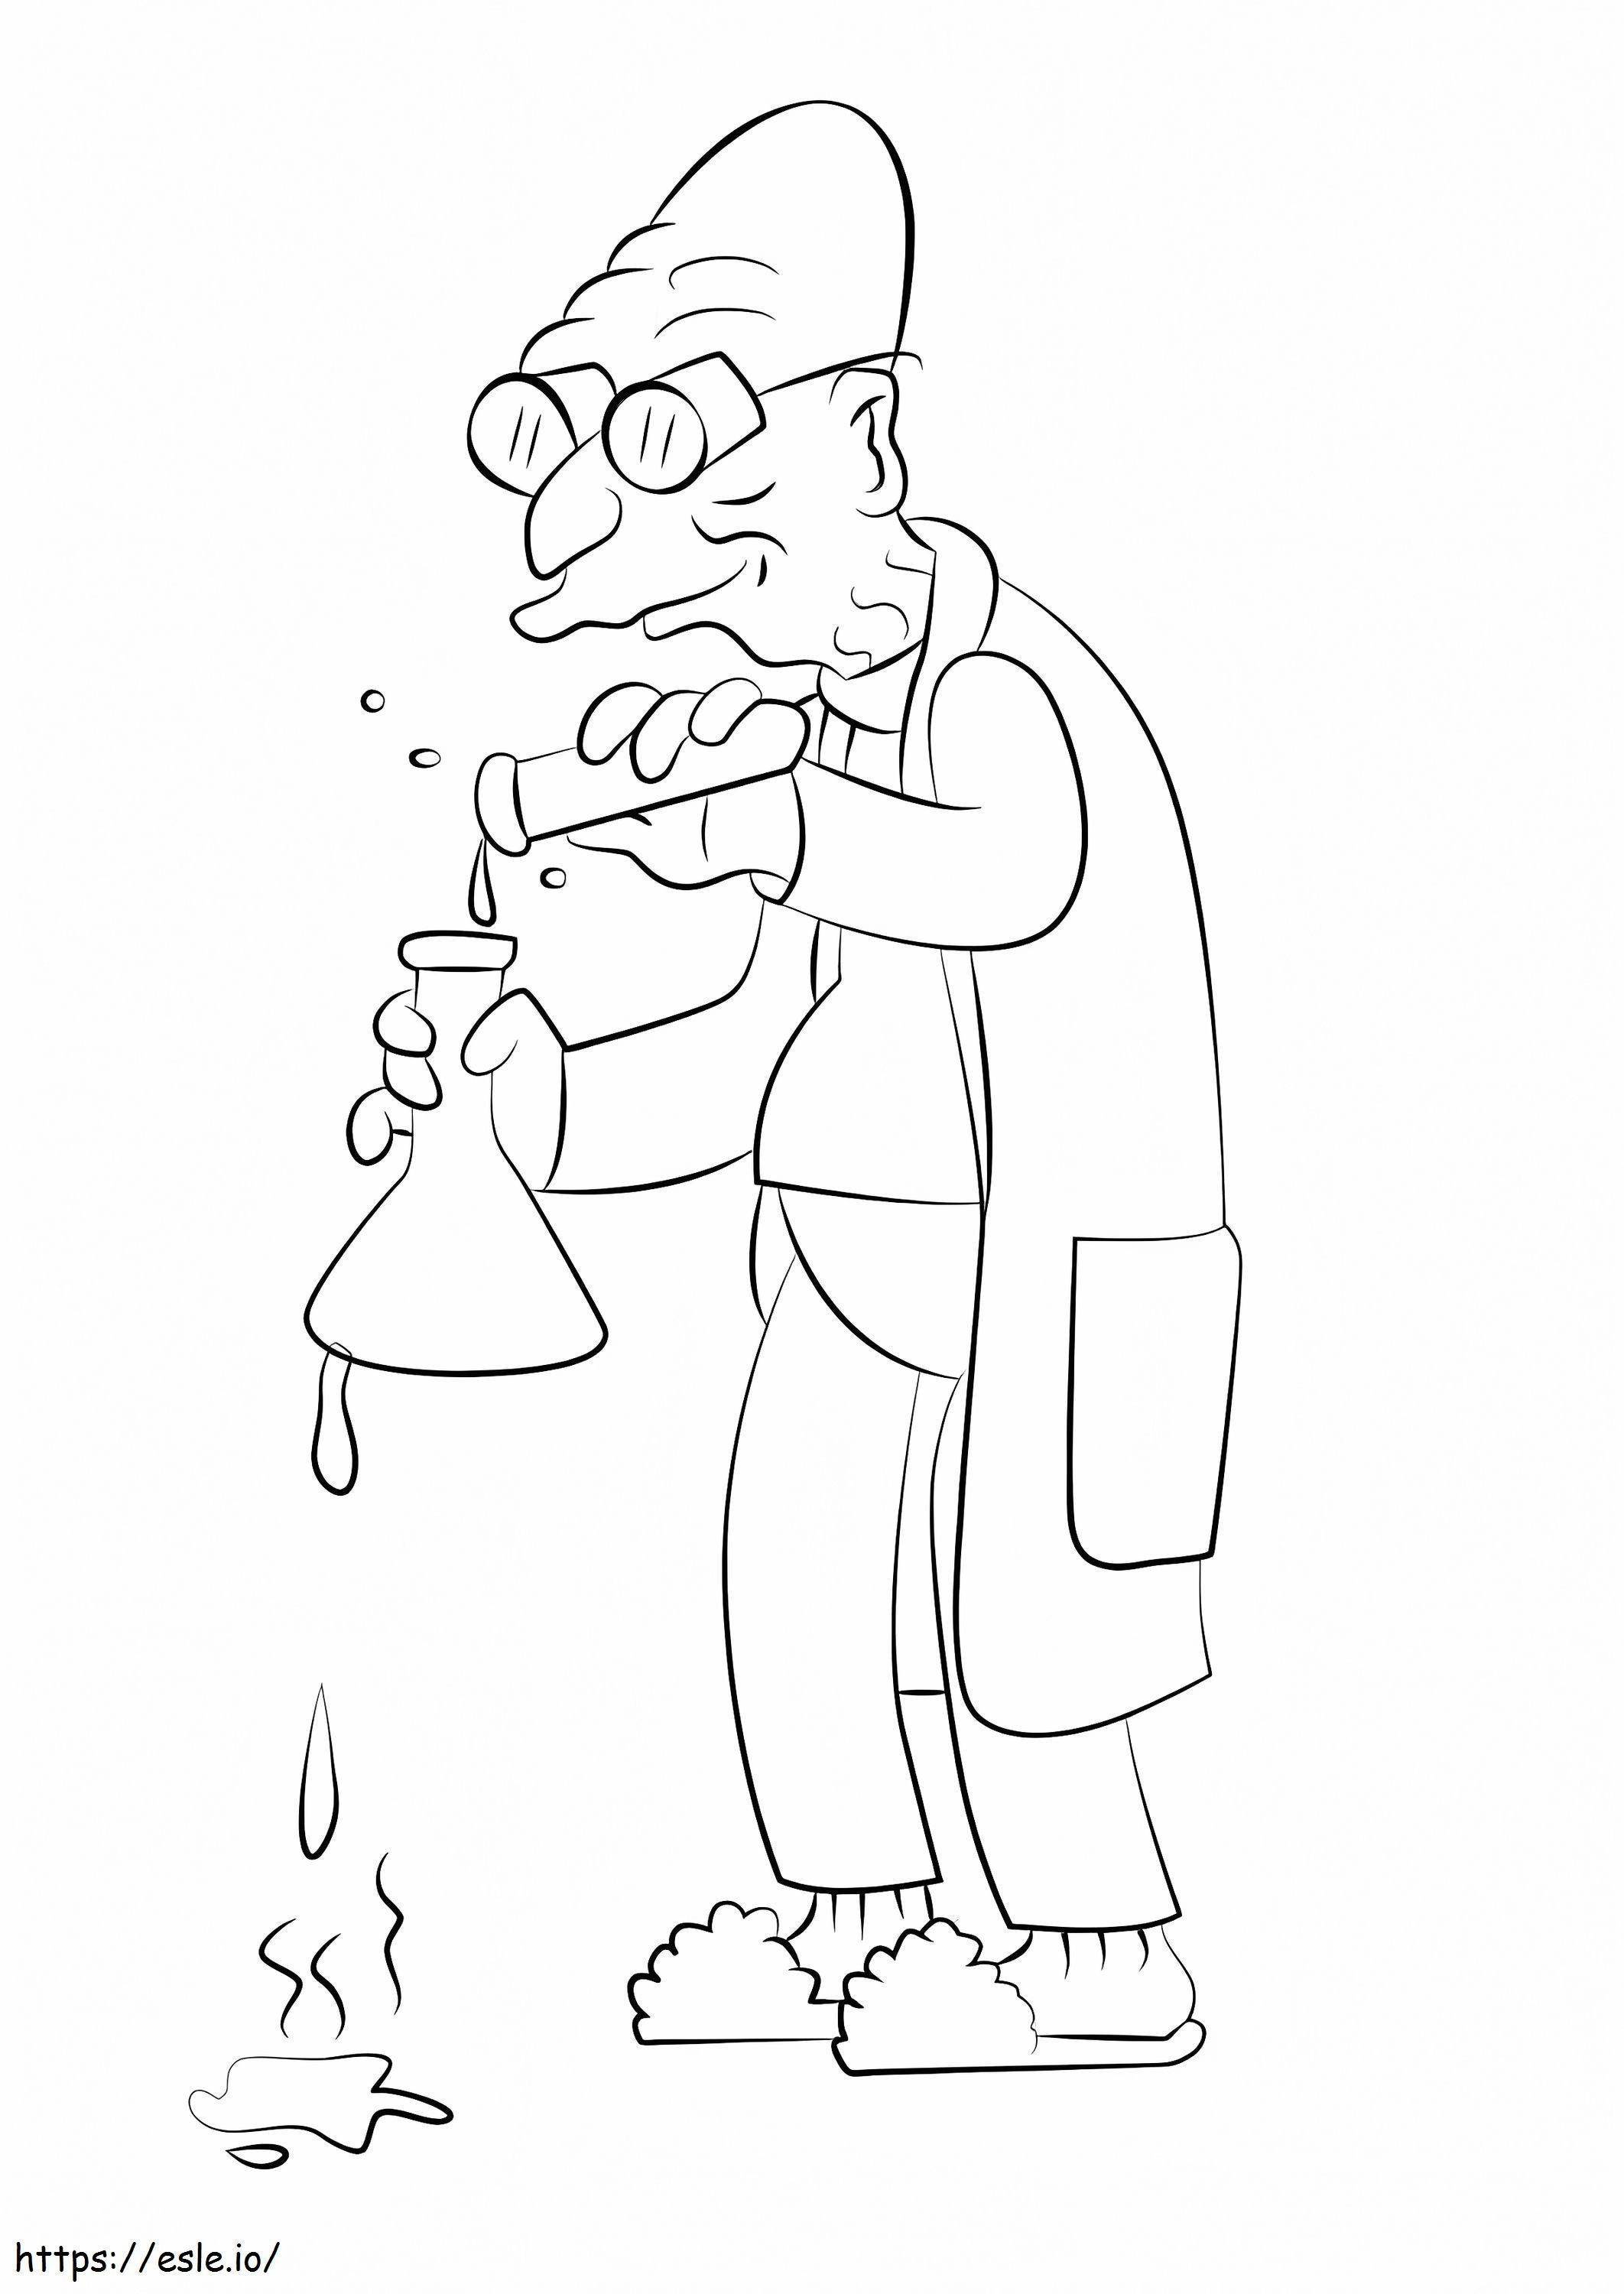 Professor Farnsworth From Futurama coloring page